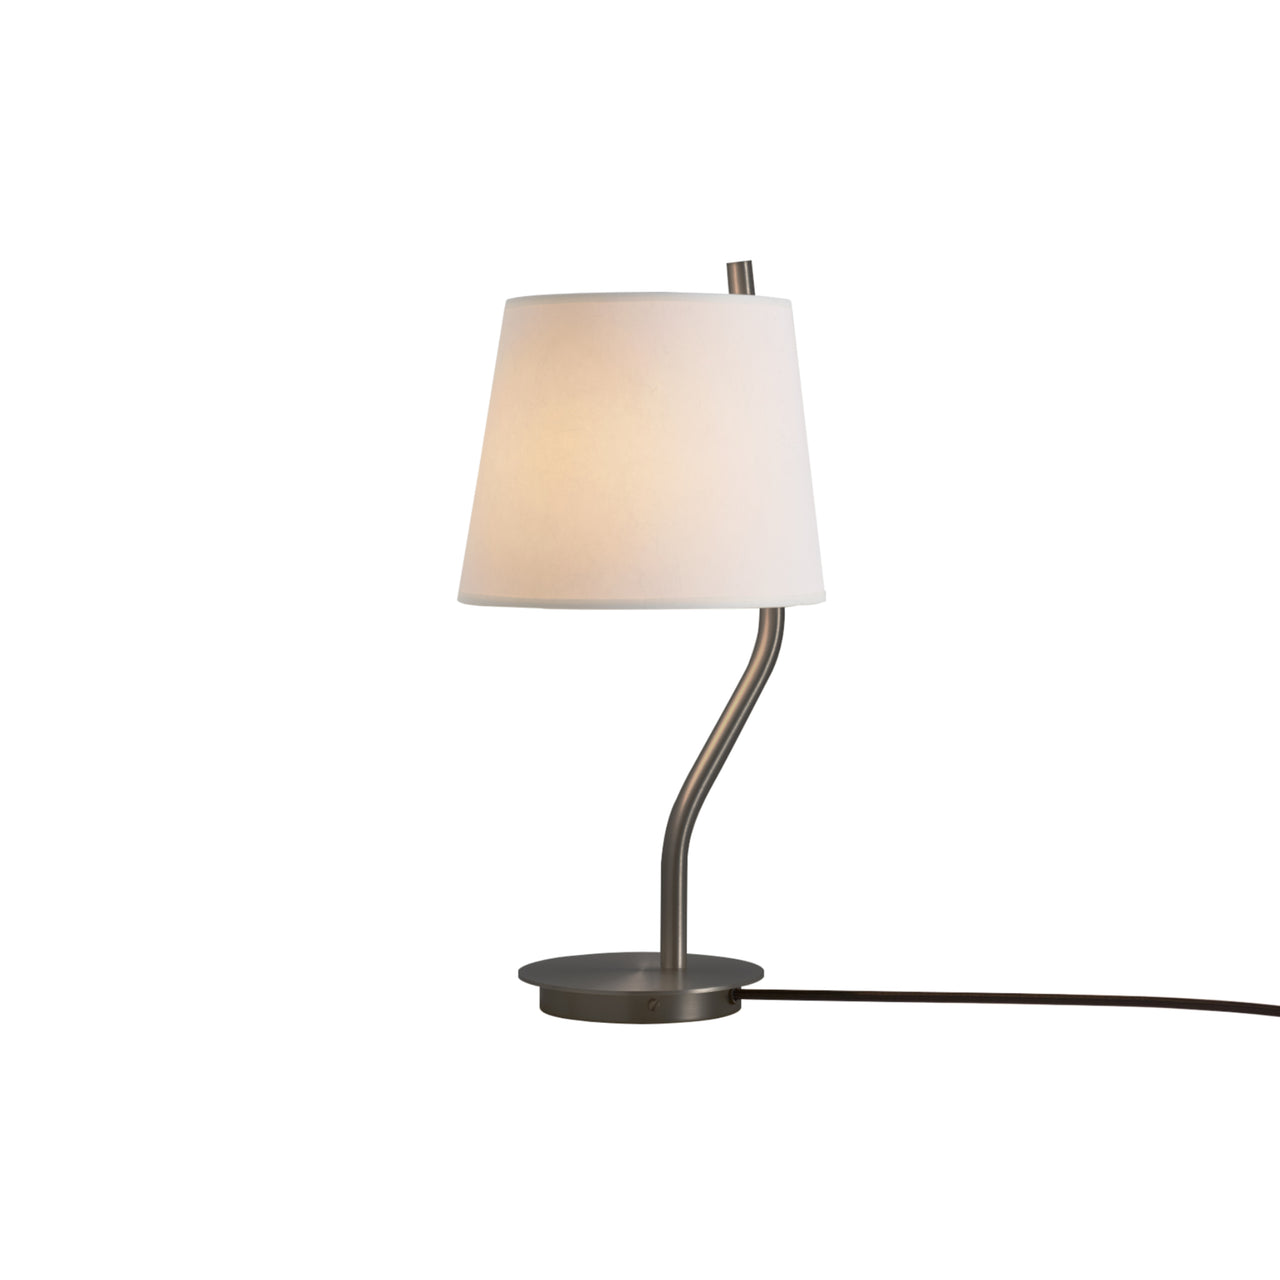 Couture Table Lamp: Satin Graphite + Cream